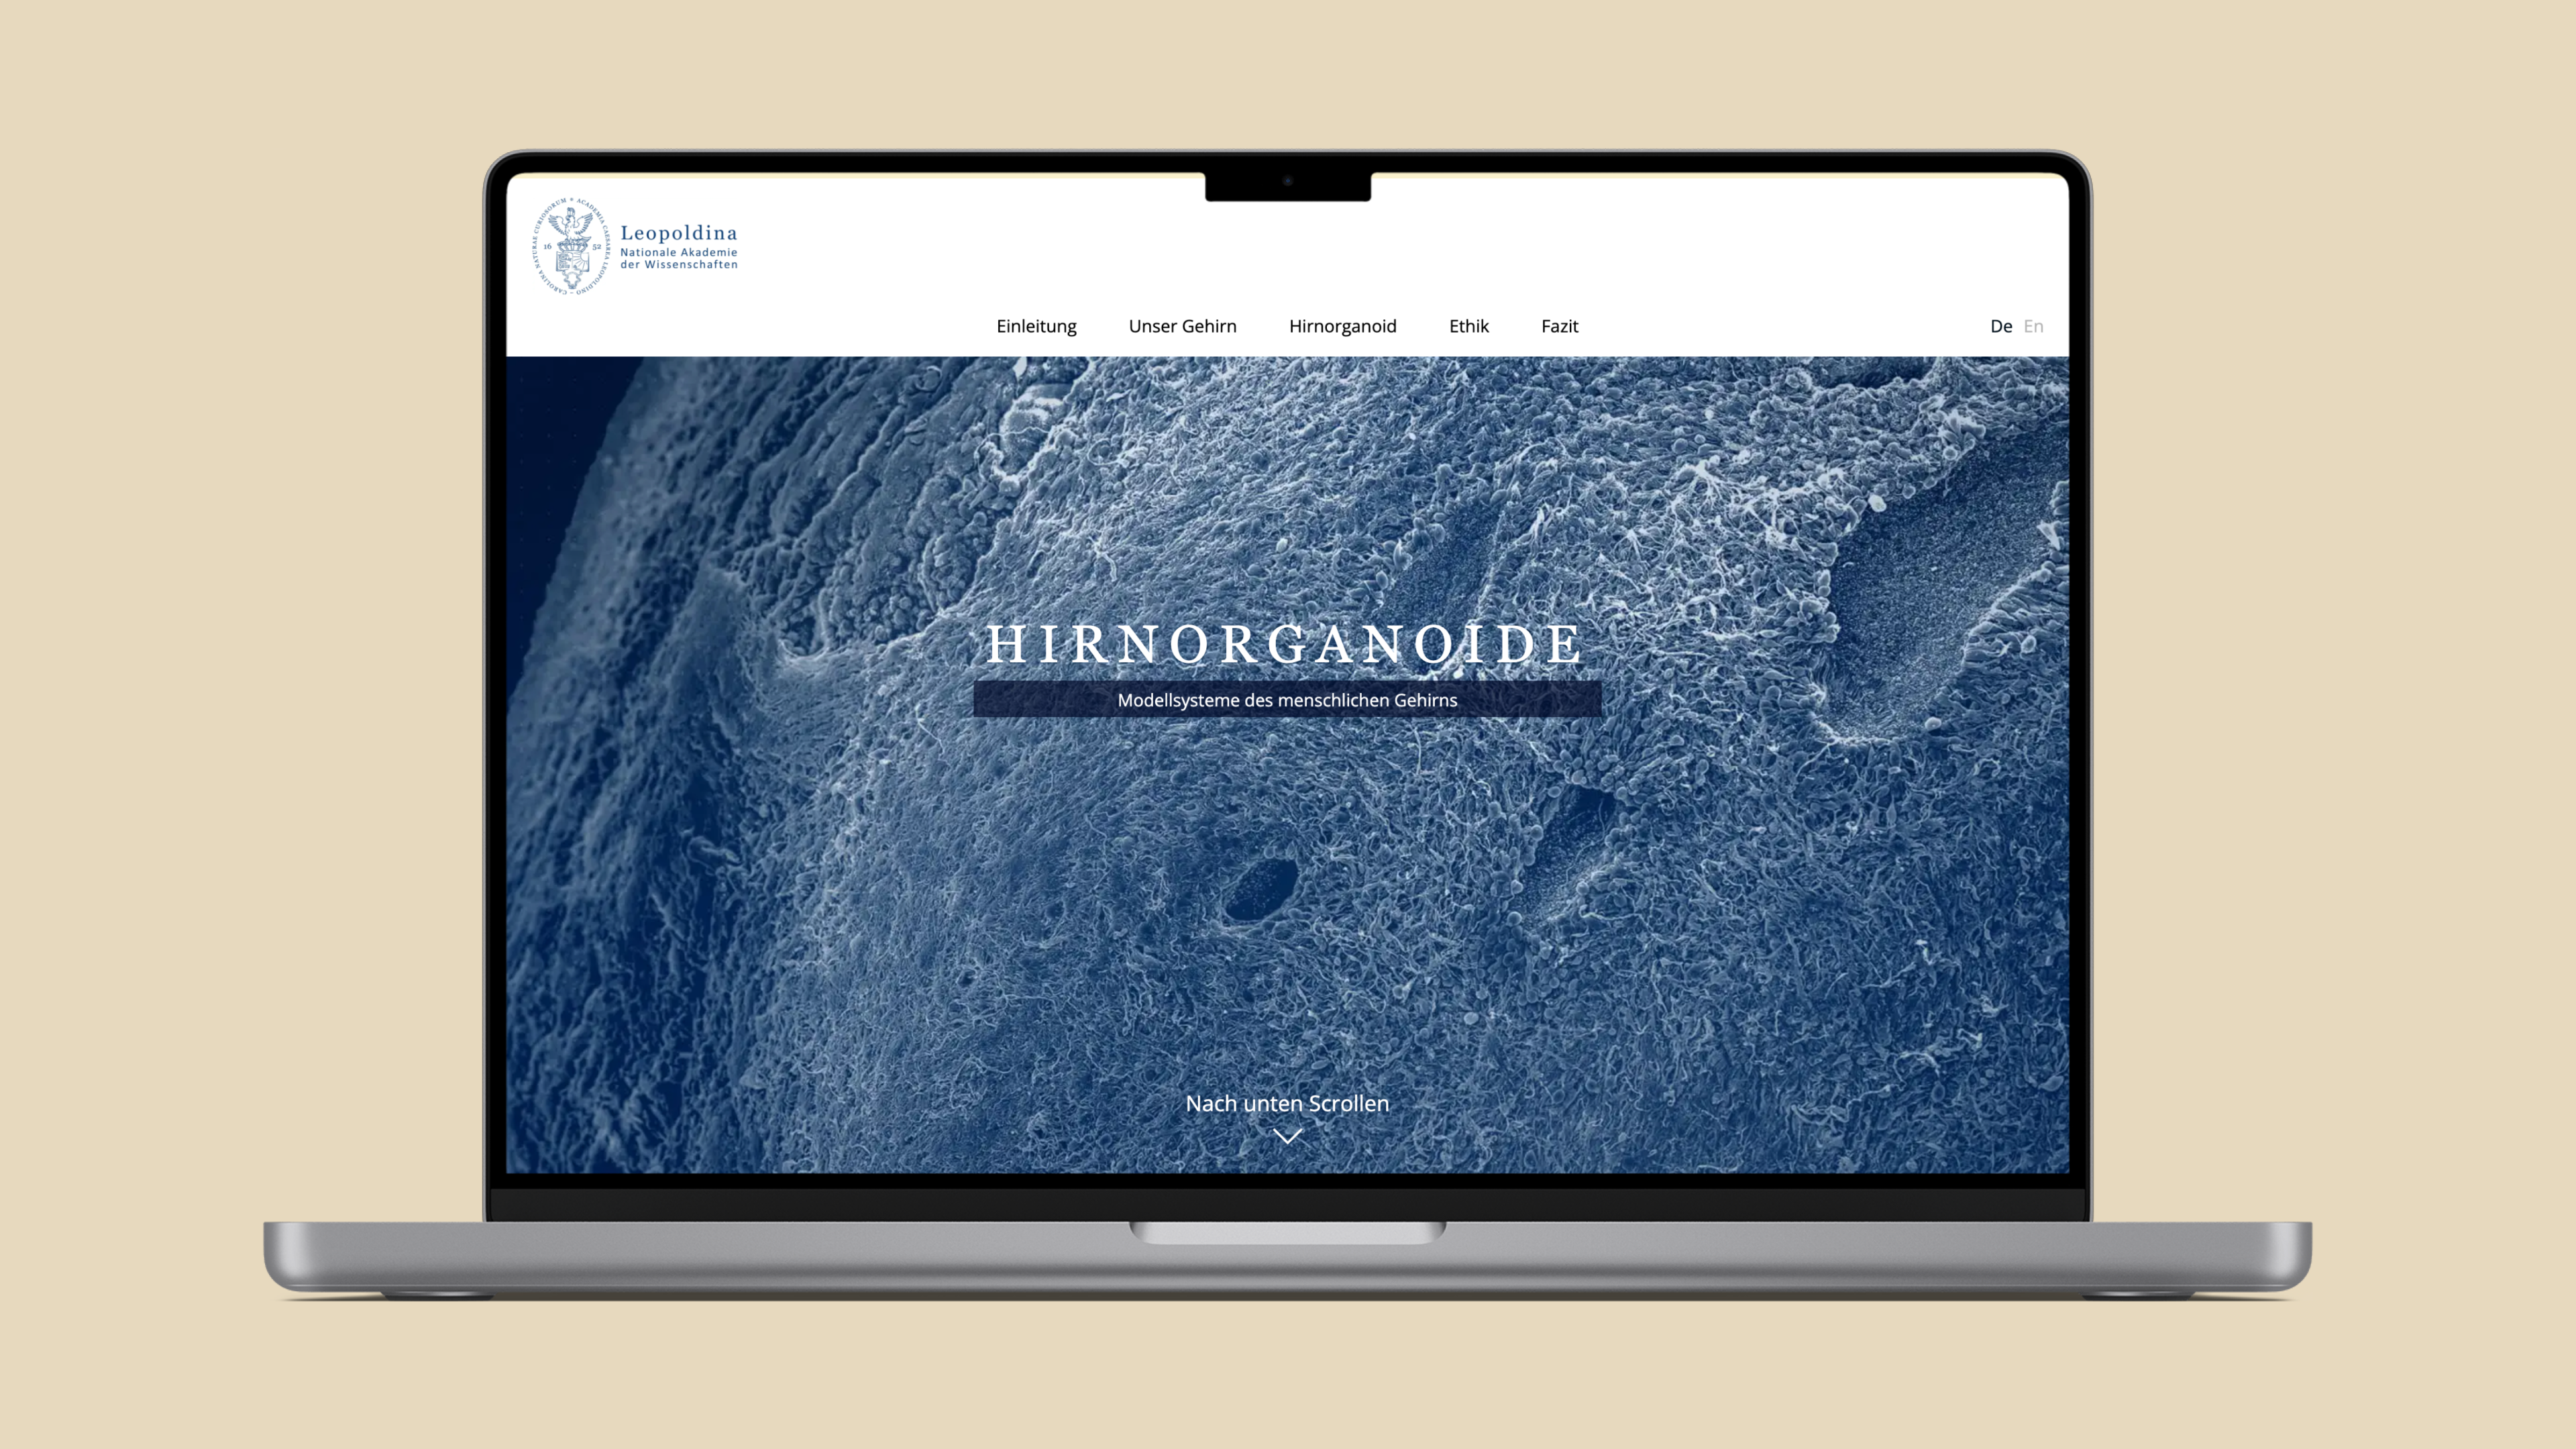 Der Startbildschirm des digitalen Dossiers zum Thema "Hirnorganoide". Der Hintergrund zeigt ein detailliertes Bild eines Hirnorganoids.